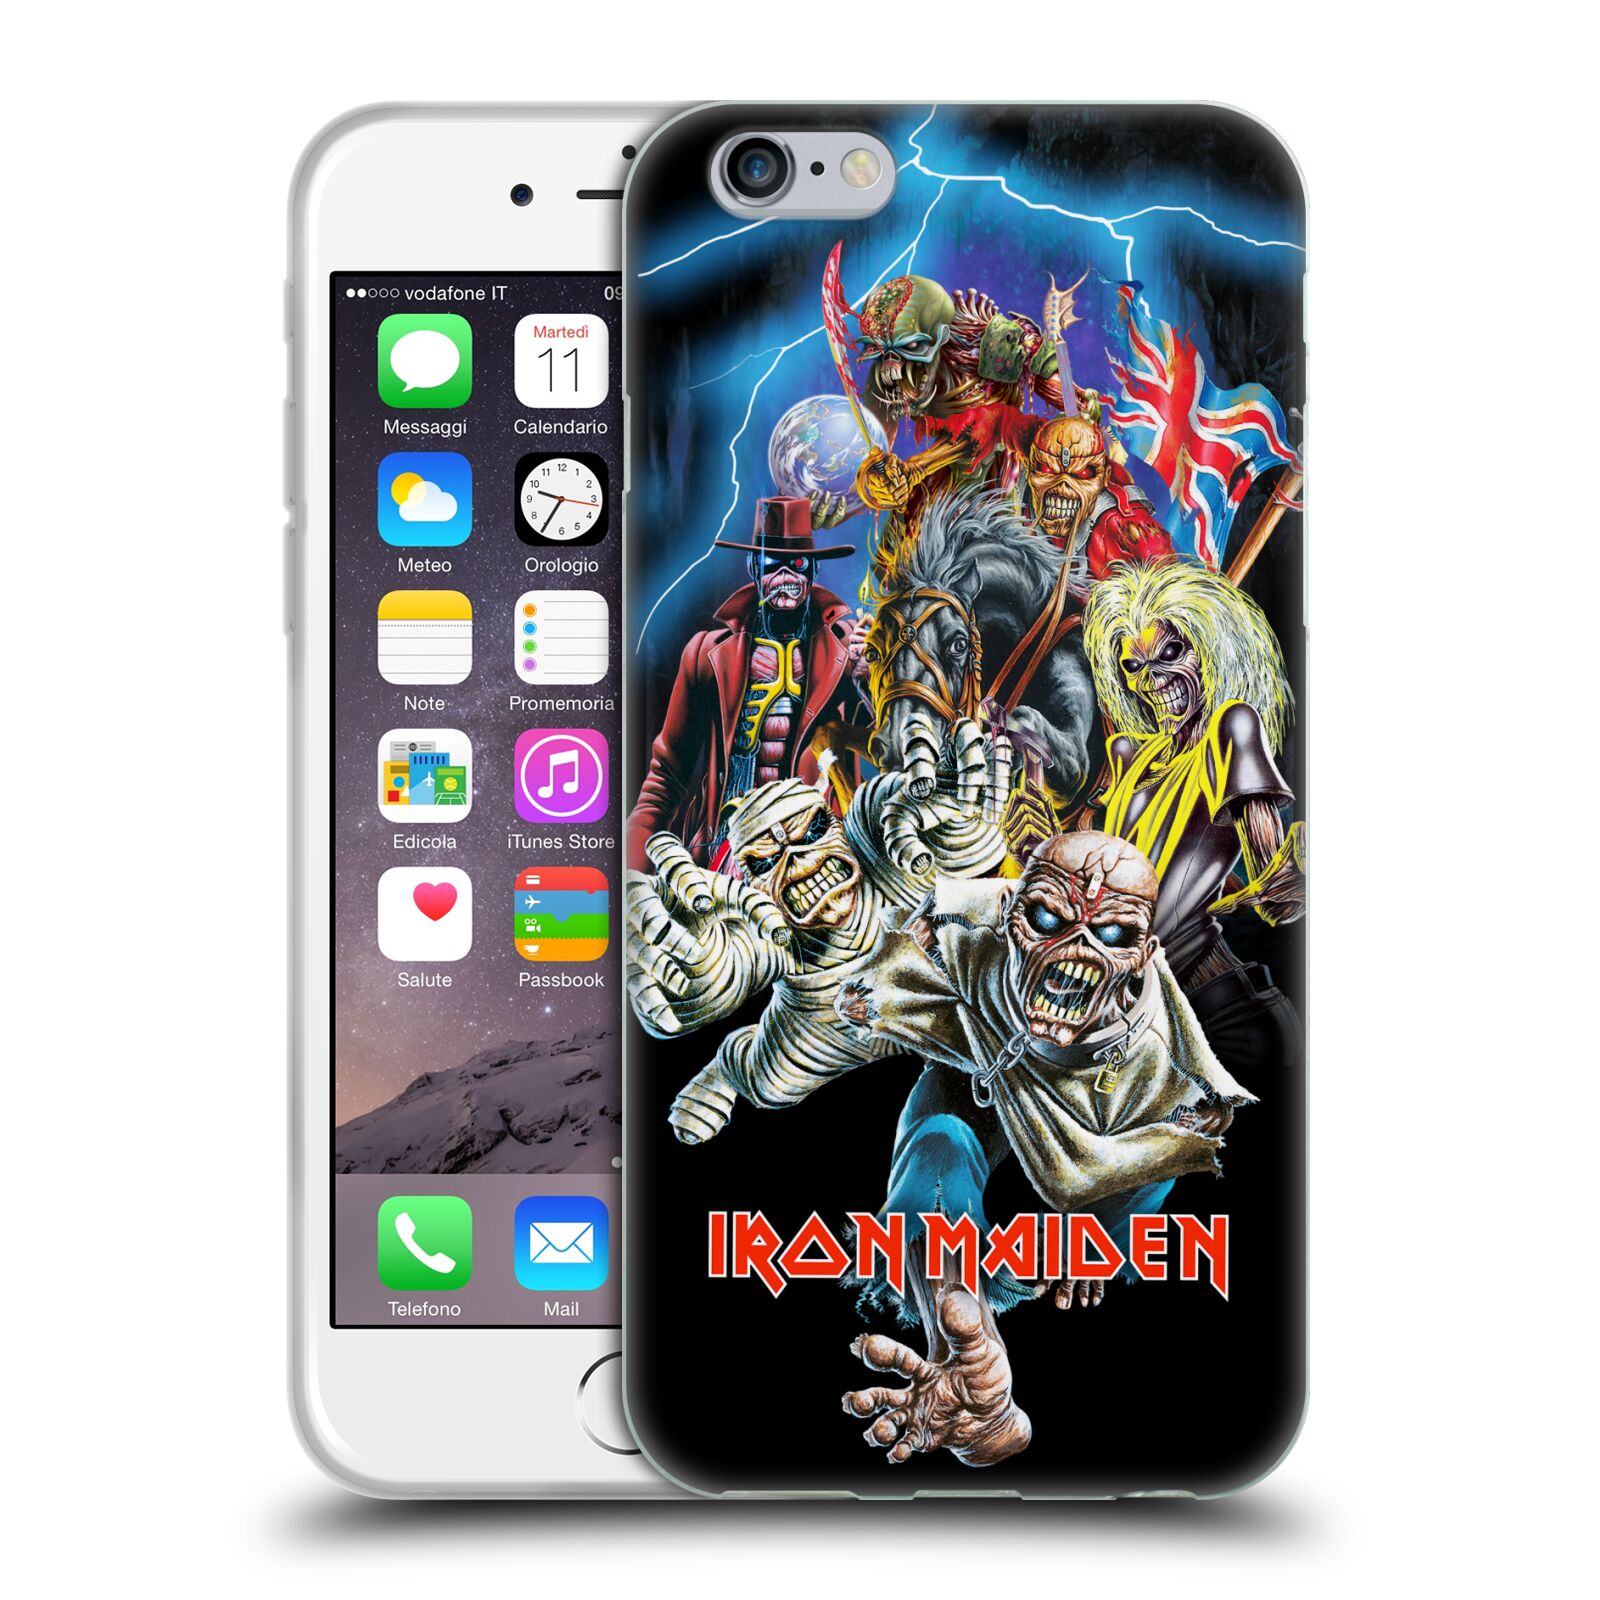 Silikonové pouzdro na mobil Apple iPhone 6 HEAD CASE - Iron Maiden - Best Of Beast (Silikonový kryt či obal na mobilní telefon s licencovaným motivem Iron Maiden Apple iPhone 6)